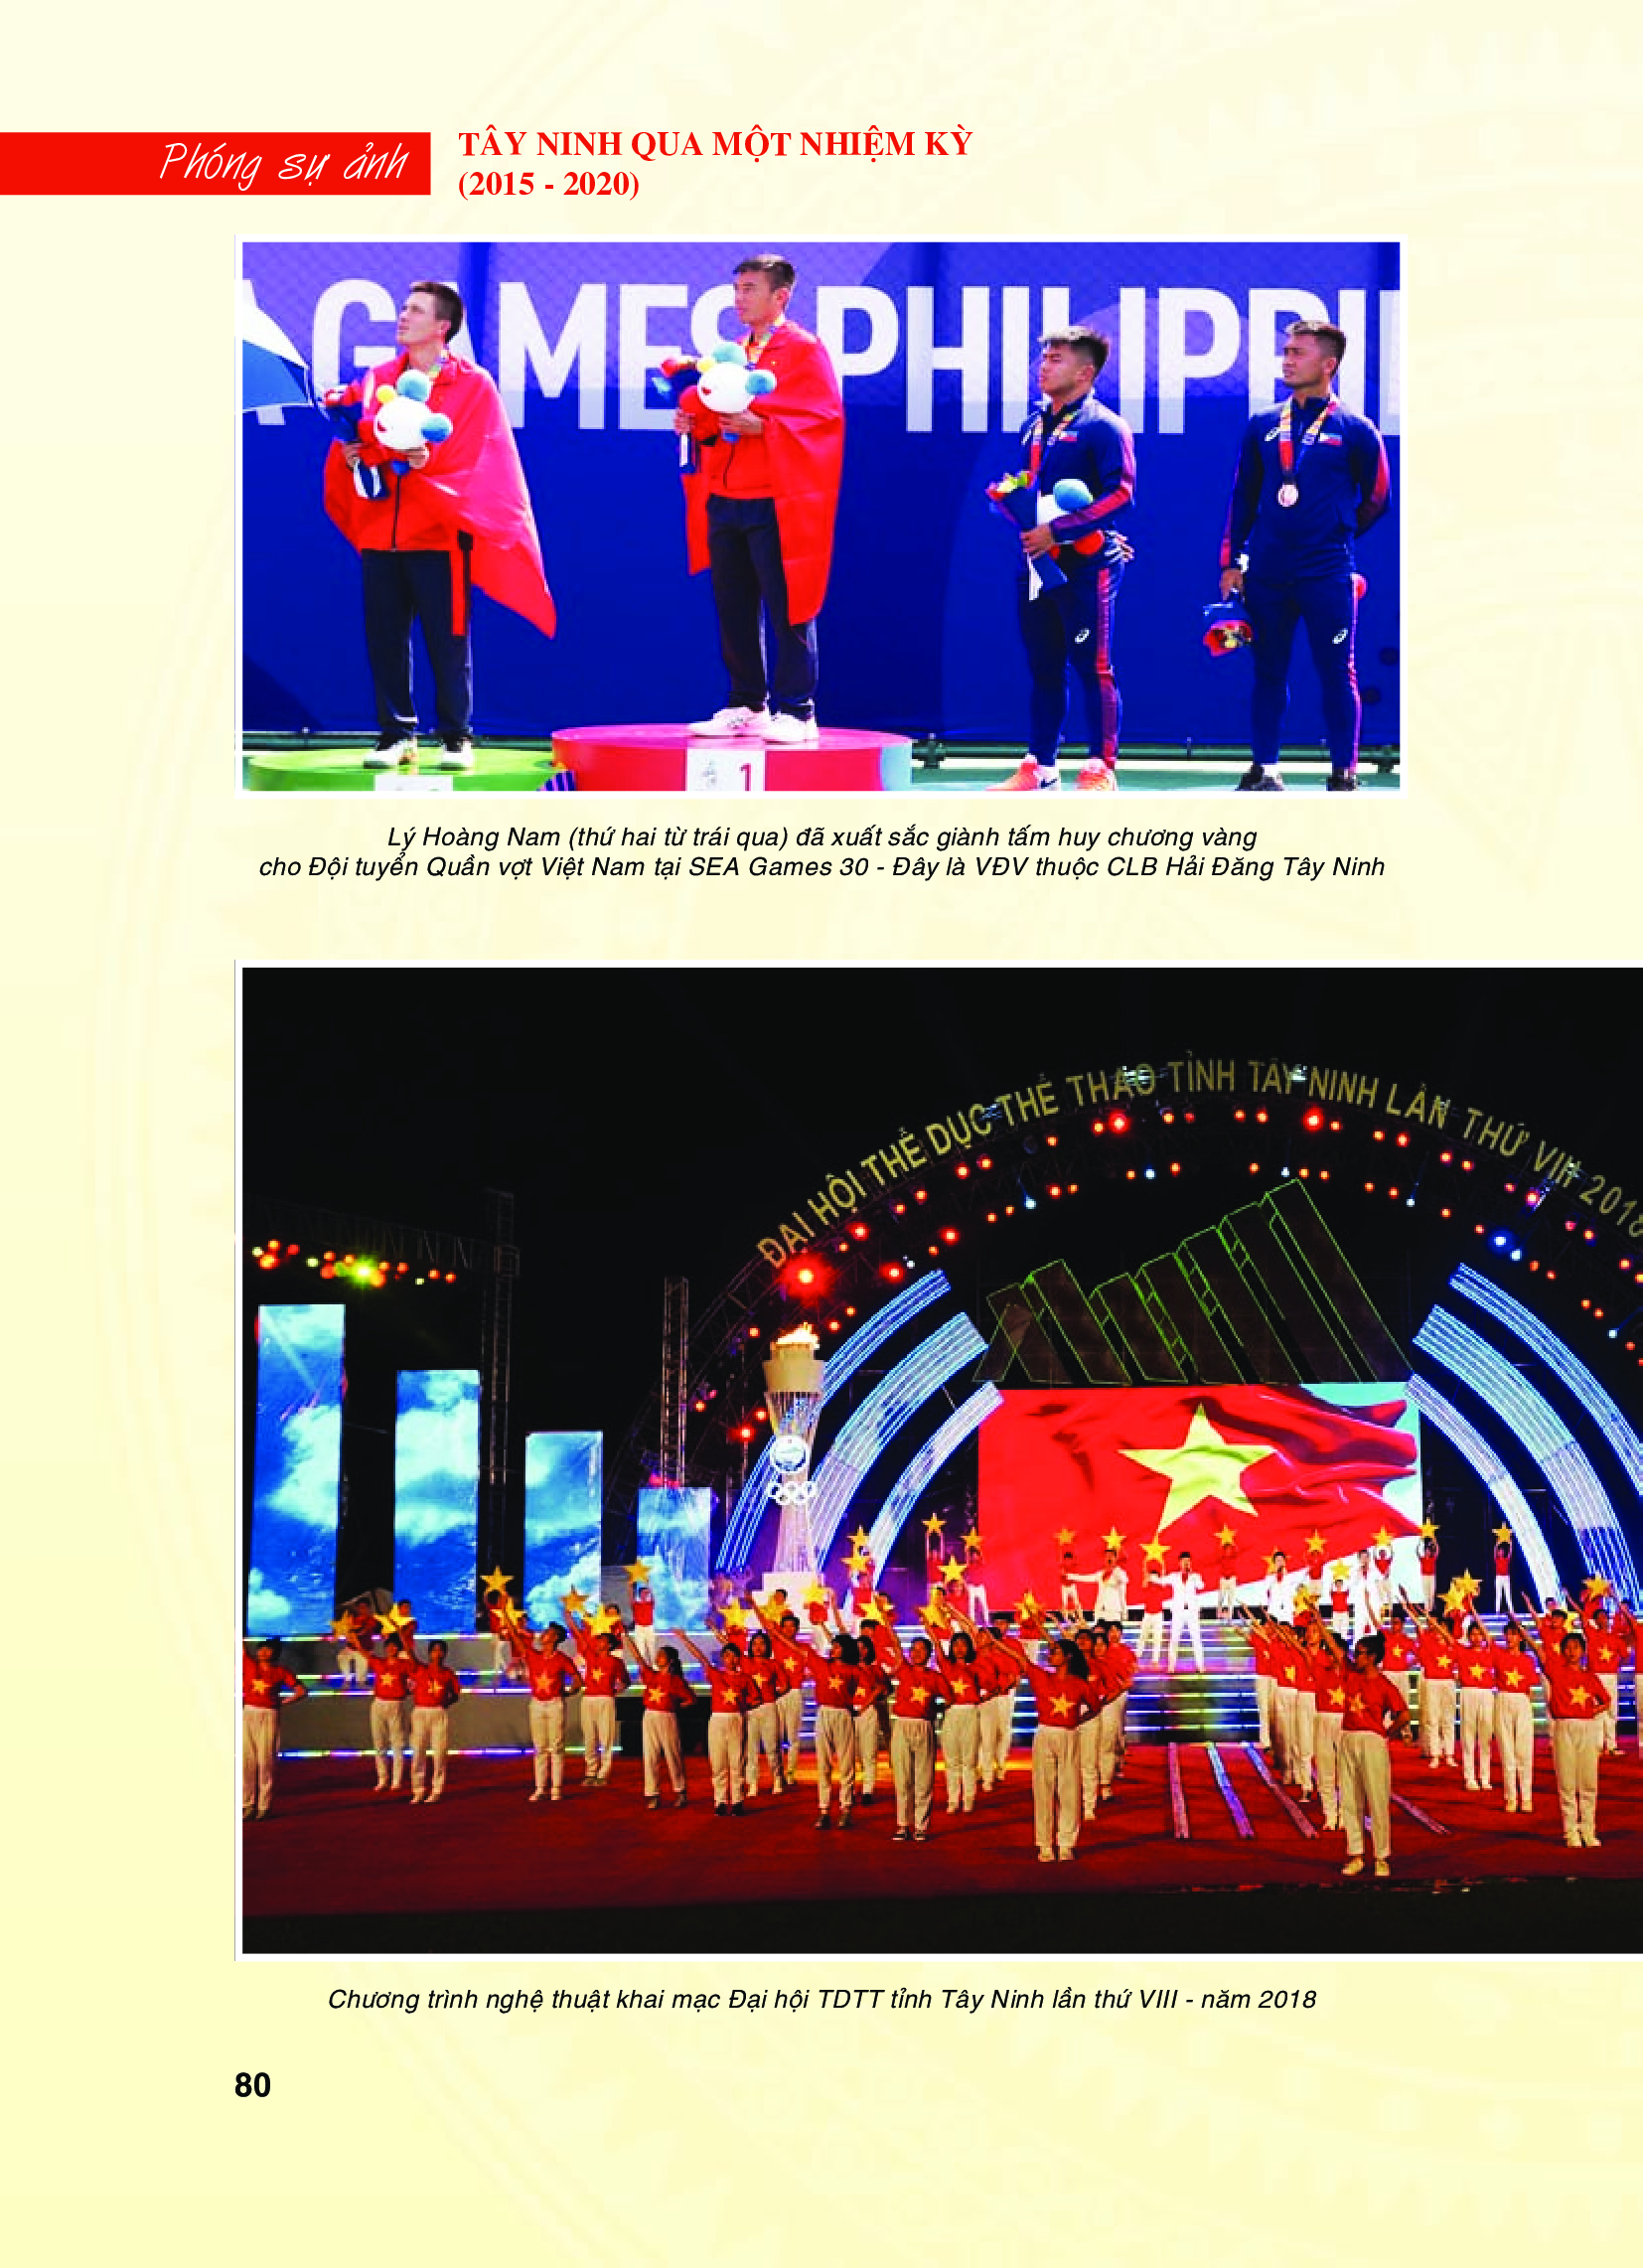 Tây Ninh qua một nhiệm kỳ (2015 - 2020): Thành tựu về Văn hoá - Xã hội